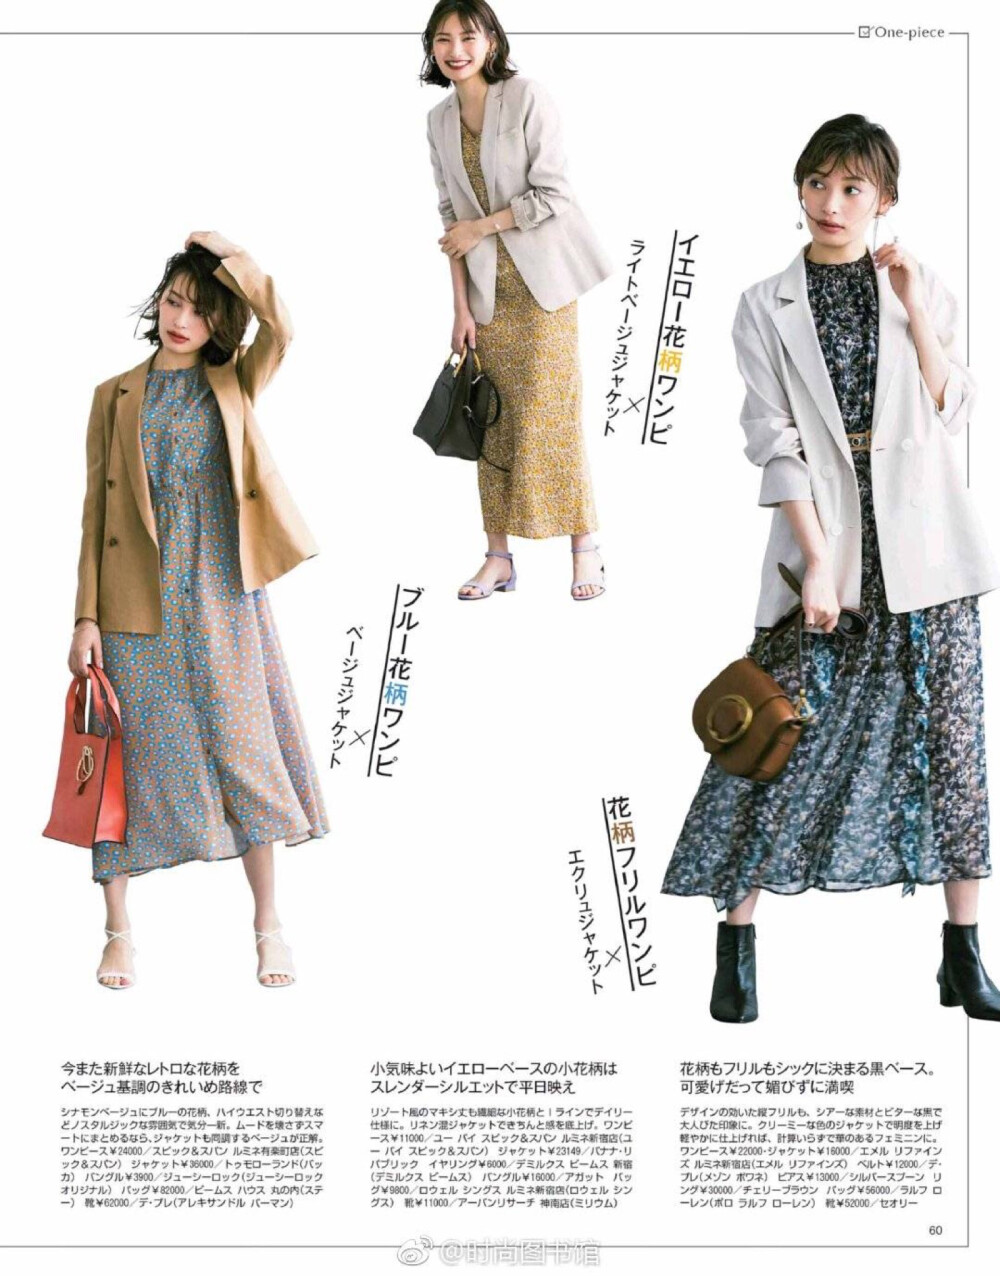 早上起床能快速出门上班的Style大全---之西服夹克搭连衣裙。#日本女子时尚杂志《Baila》#5月刊电子原版高清上架。杂志图源来自时尚图书馆APP ​​​